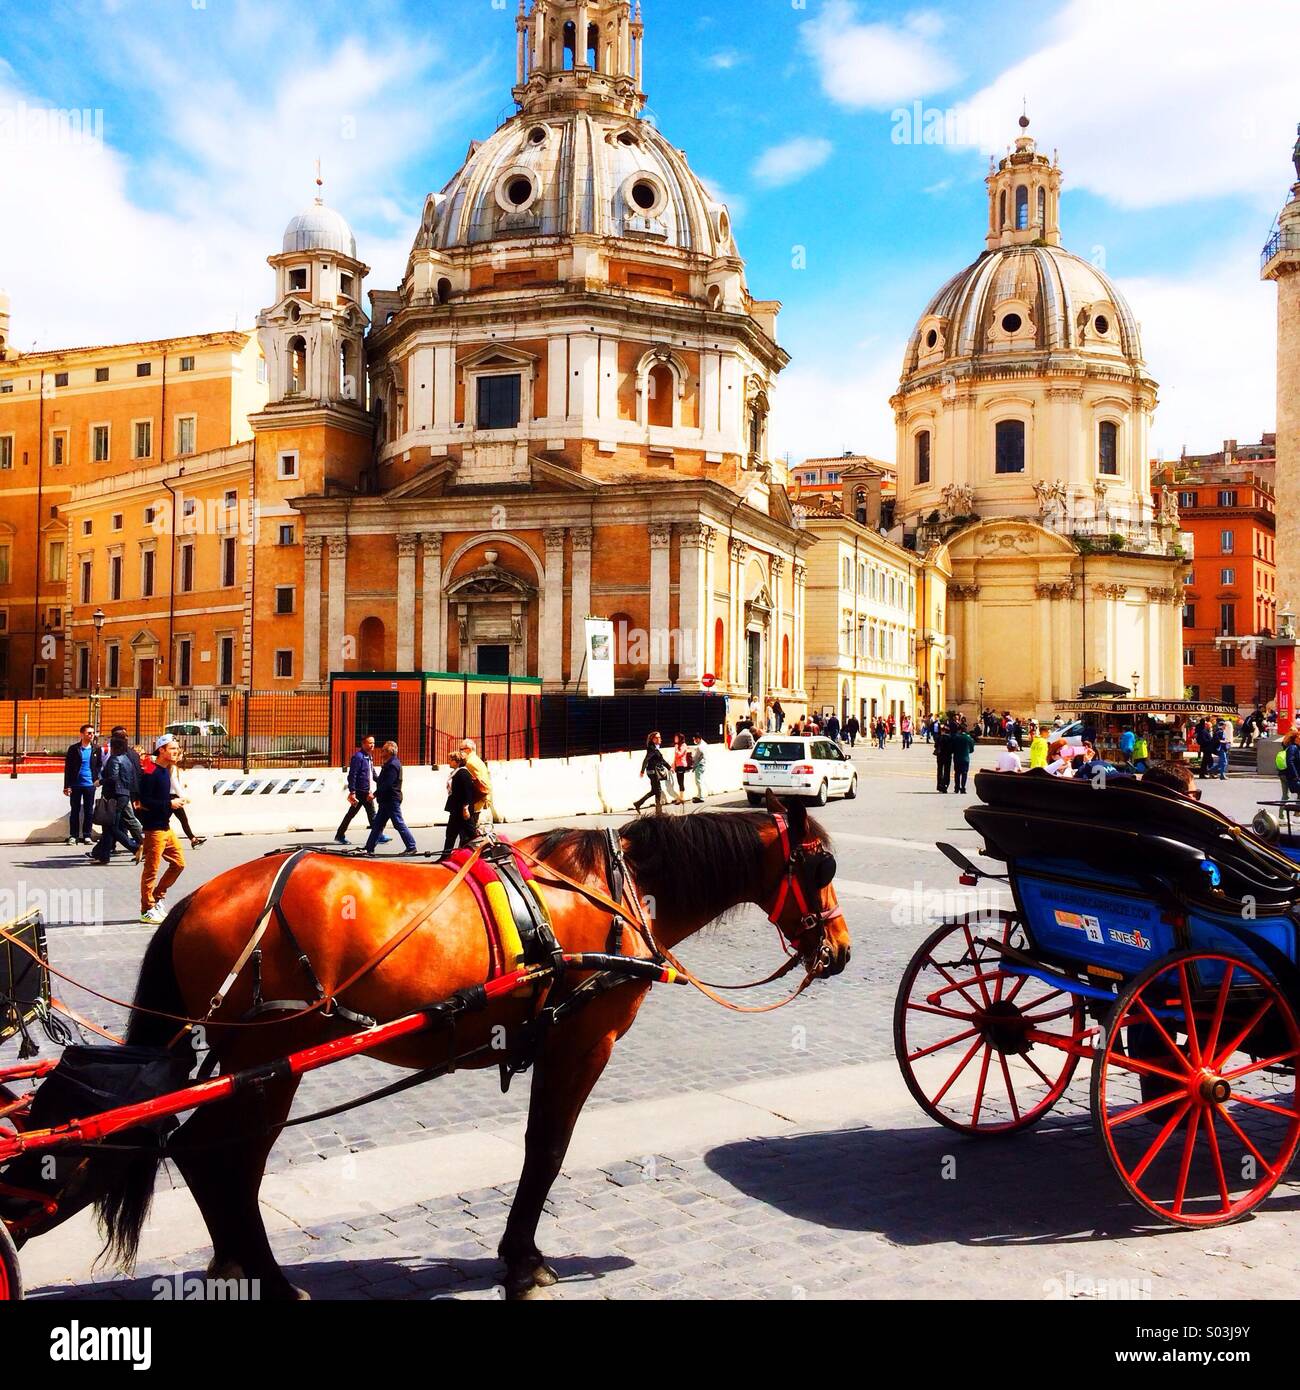 Les chevaux et voitures , la Piazza Venezia, Rome, Italie Europe Banque D'Images